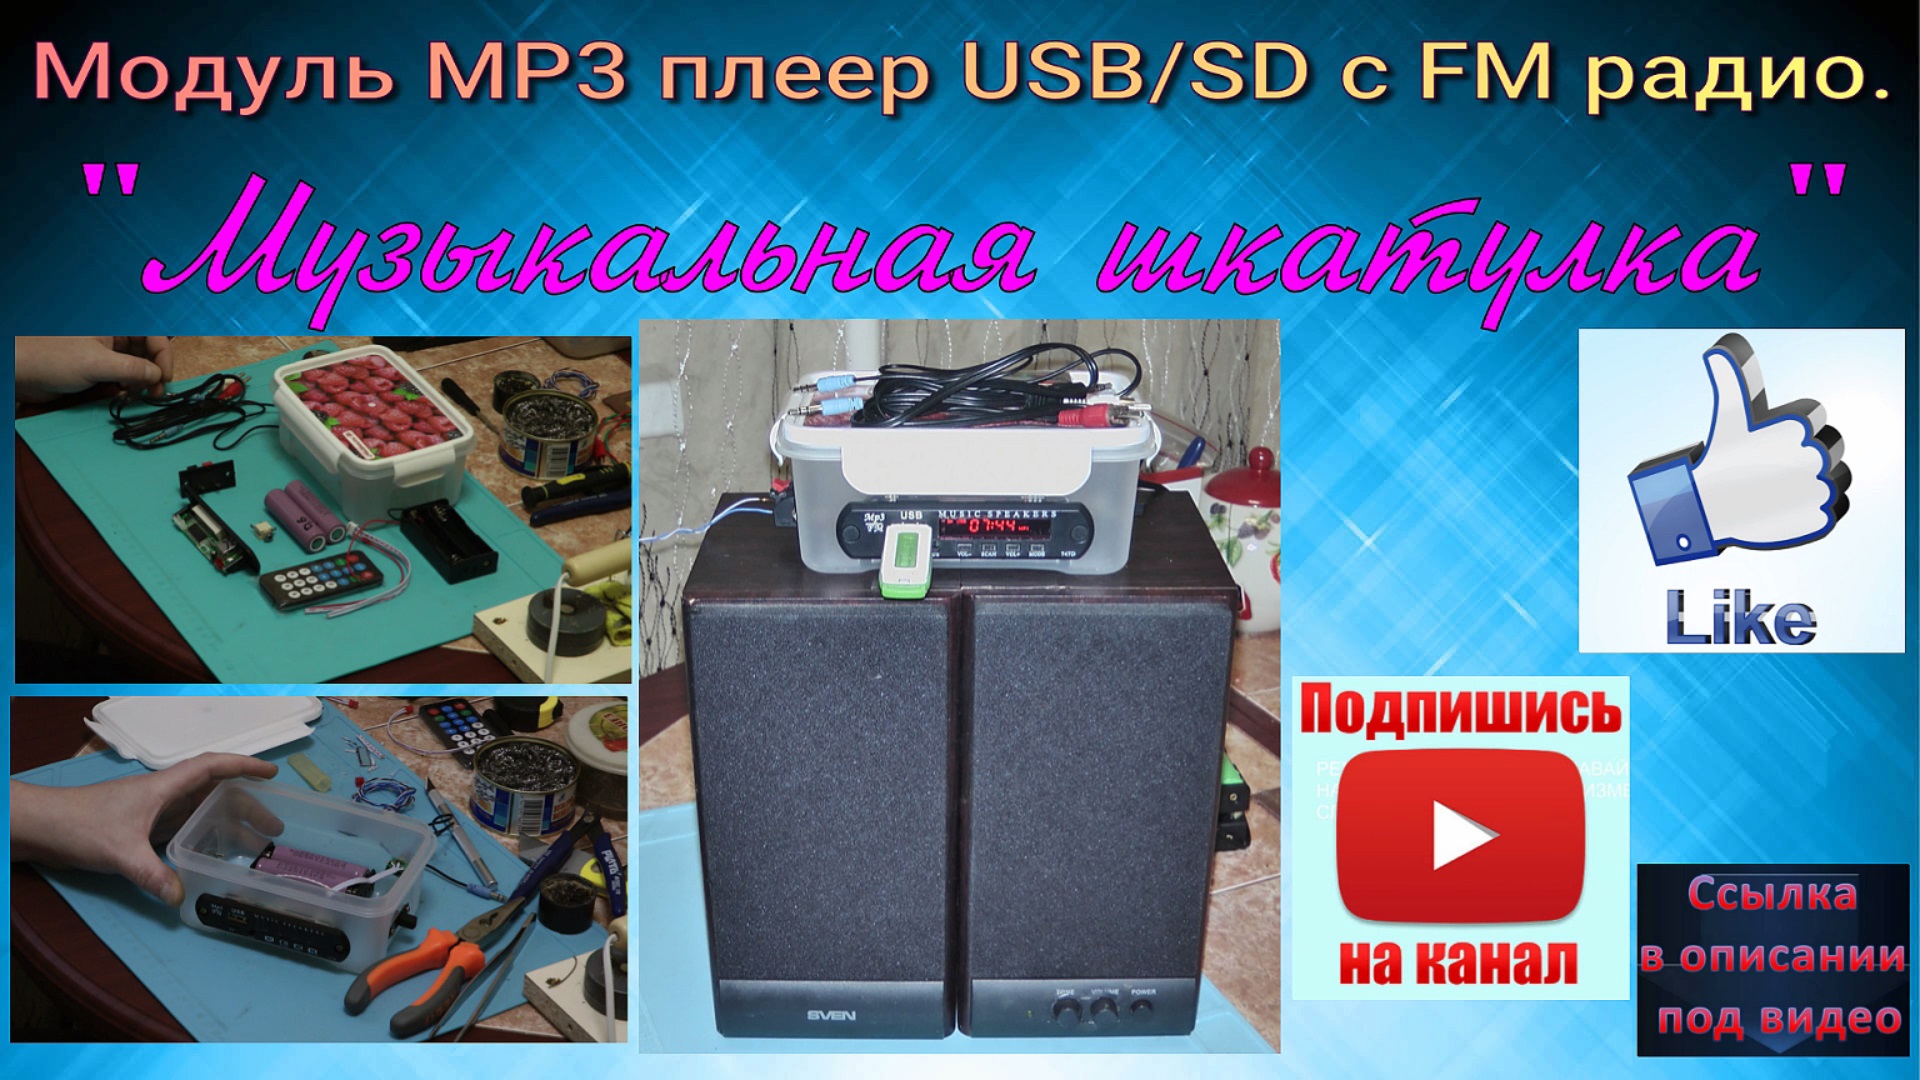 Модуль MP3 плеер USB/SD с FM радио. "Музыкальная шкатулка".